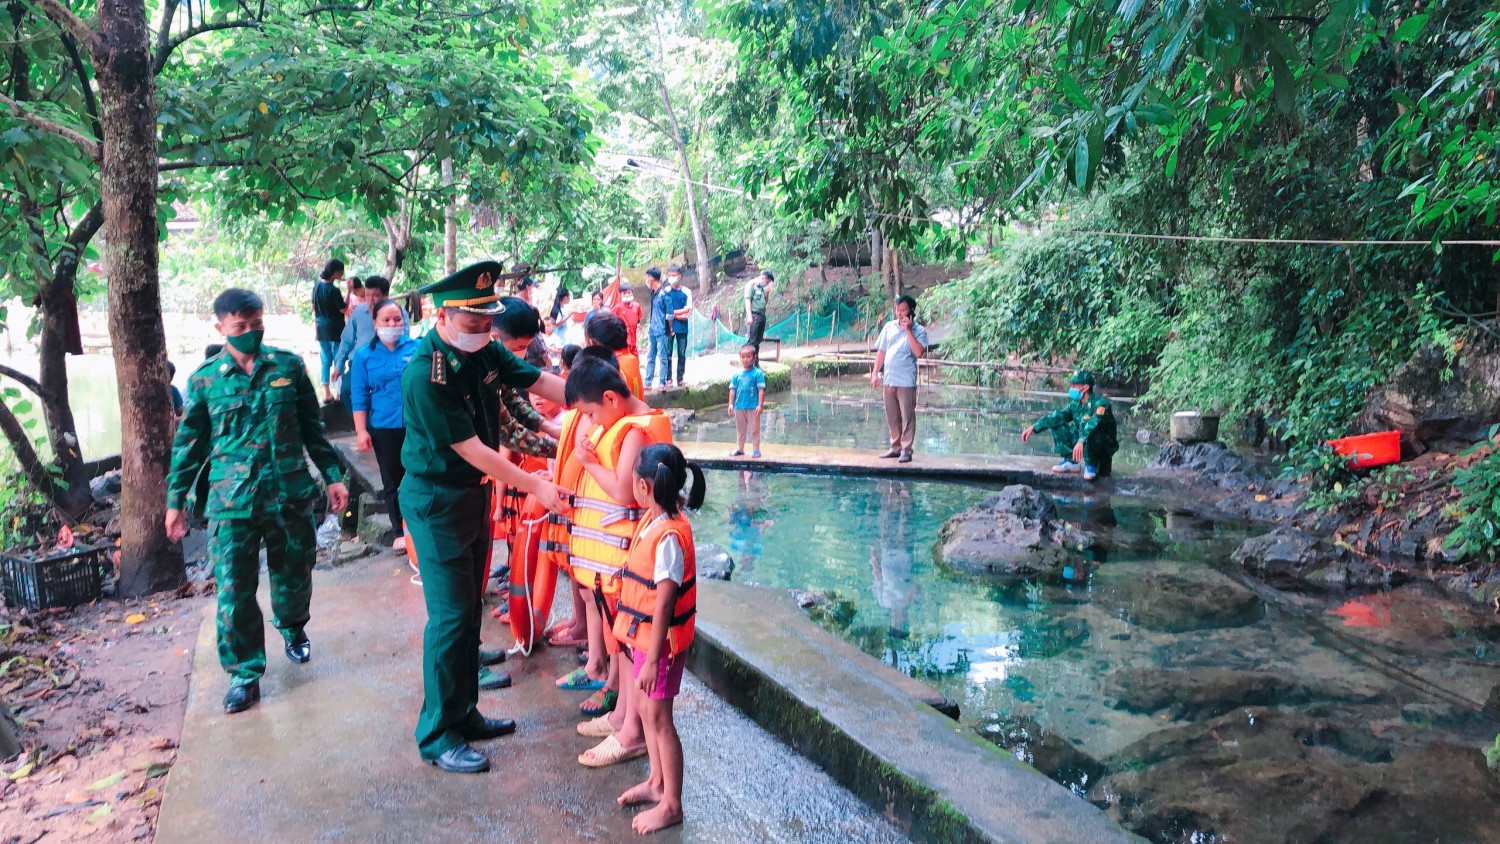 Chi đoàn Đồn BP Thị Hoa tổ chức tuyên truyền phòng chóng đuối nước cho trẻ em và dạy bơi cho các em